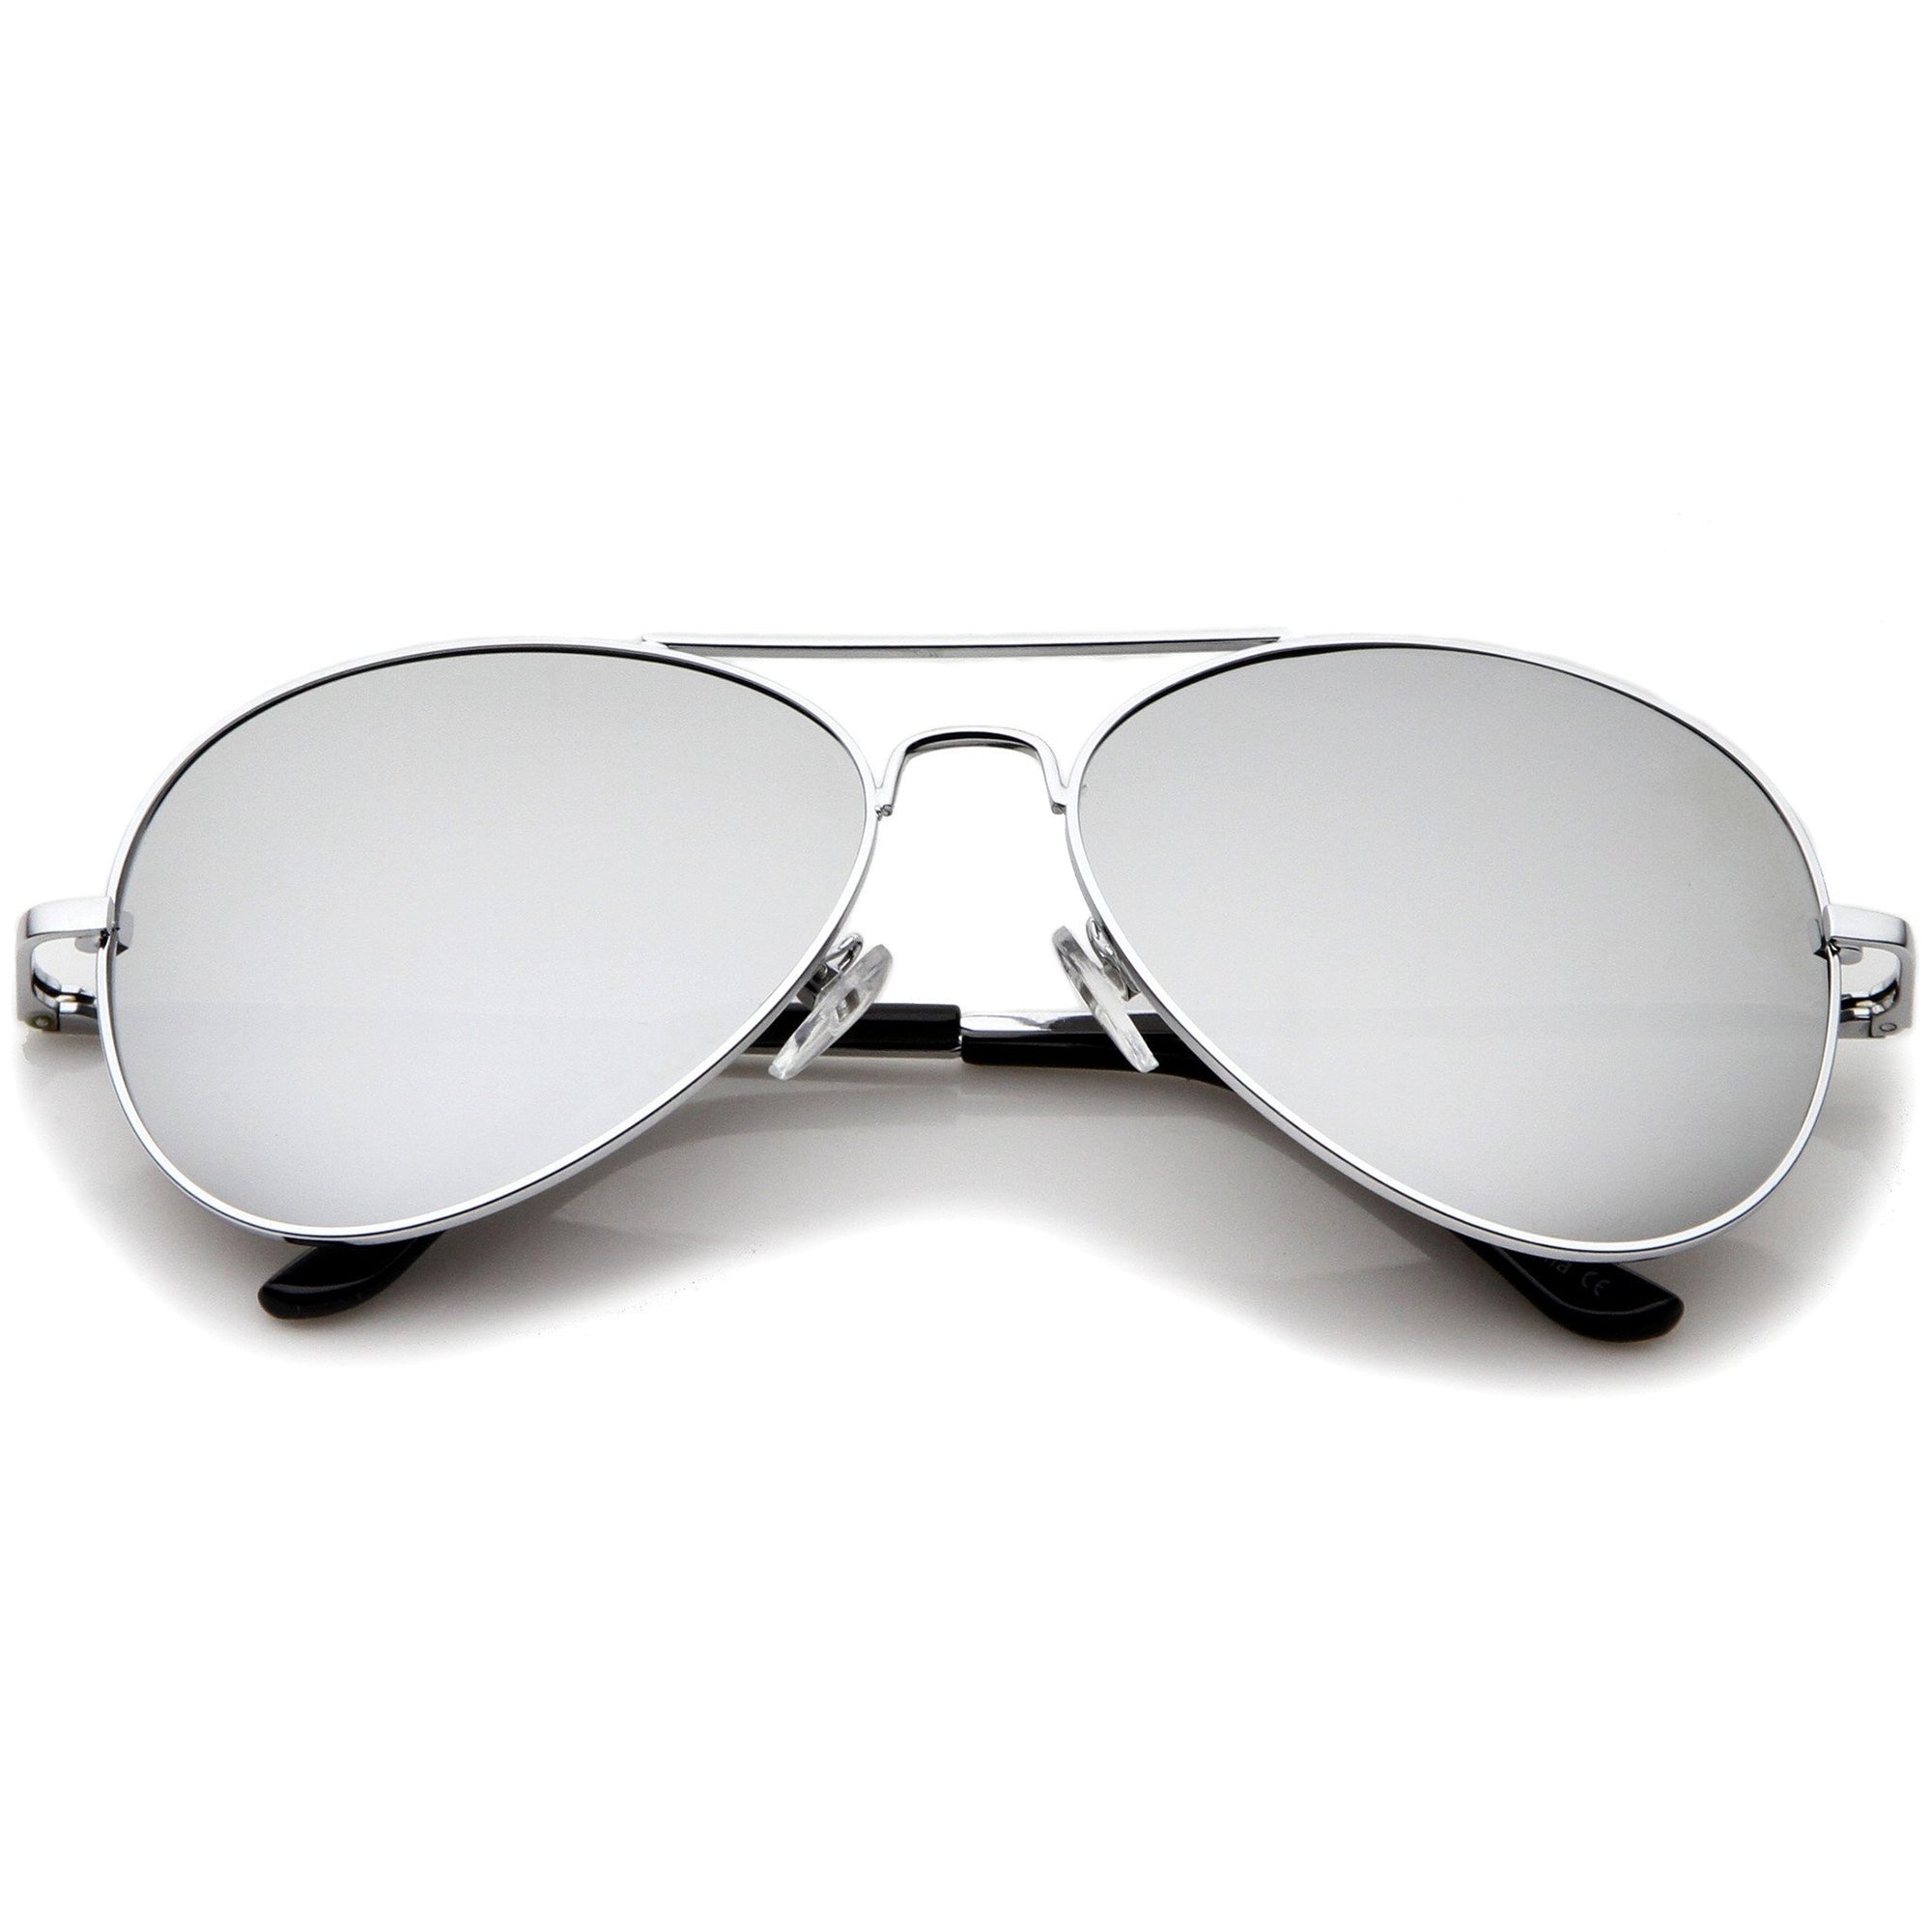 Gafas de sol estilo aviador de metal con lentes espejadas militares de primera calidad 1375 58 mm